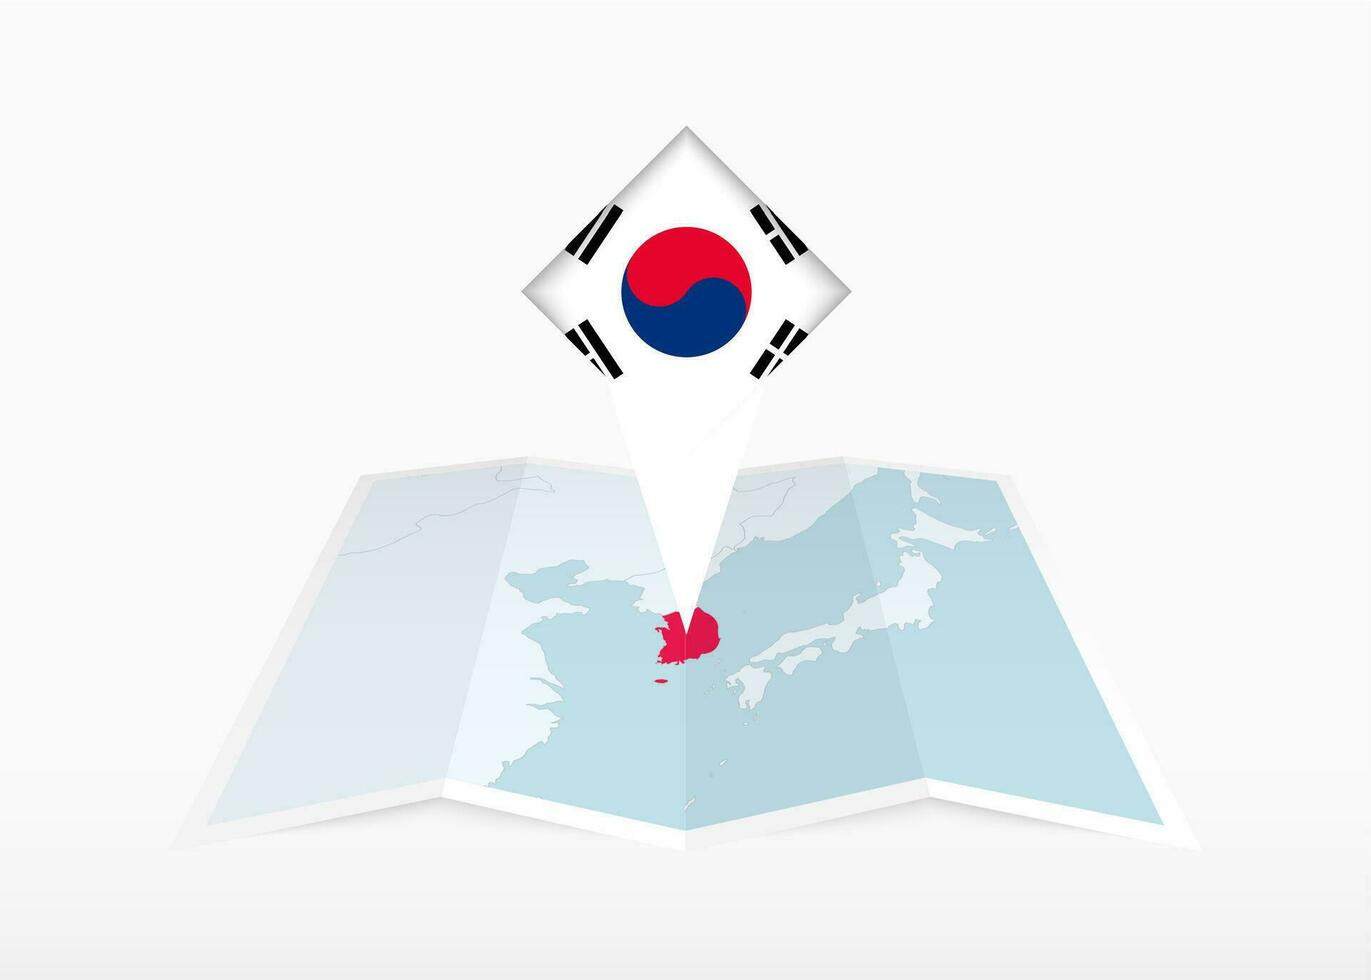 Süd Korea ist abgebildet auf ein gefaltet Papier Karte und festgesteckt Ort Marker mit Flagge von Süd Korea. vektor